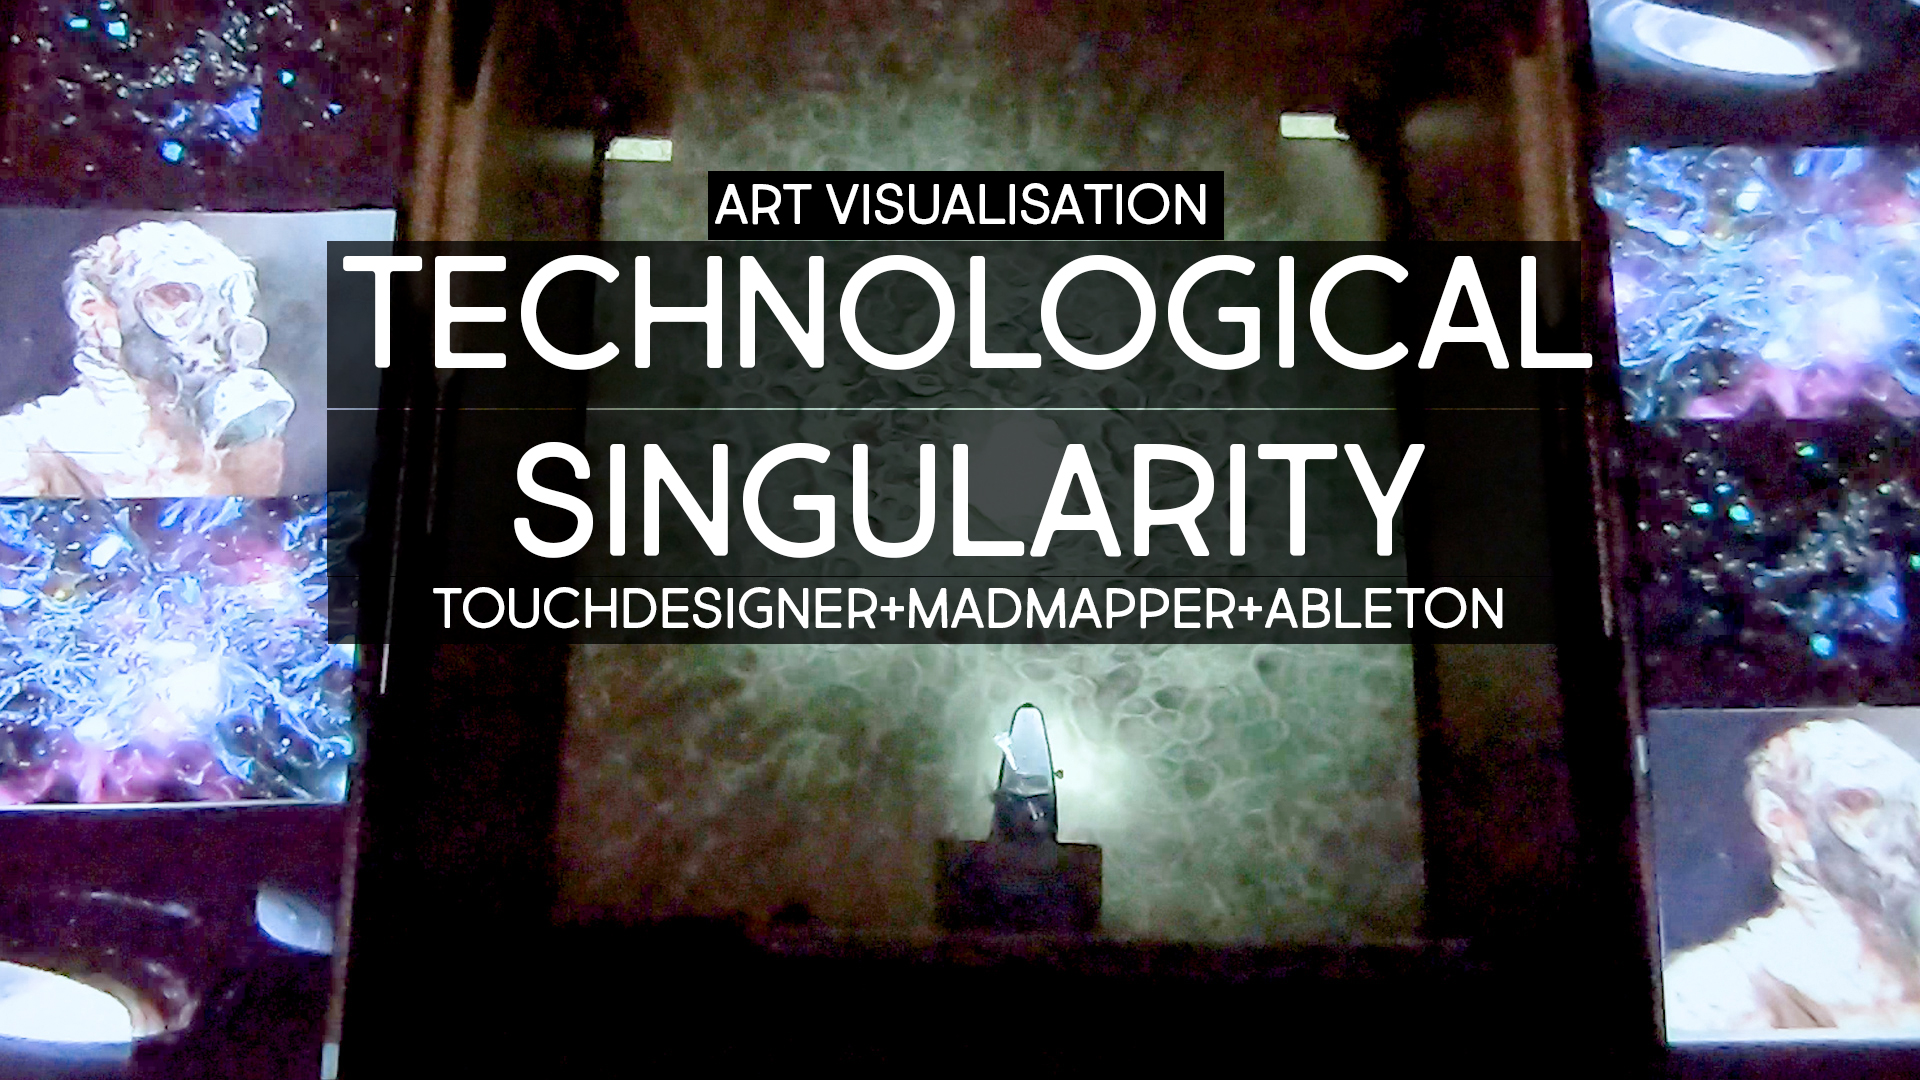 Technological singularity touchdesigner+madmapper+ableton